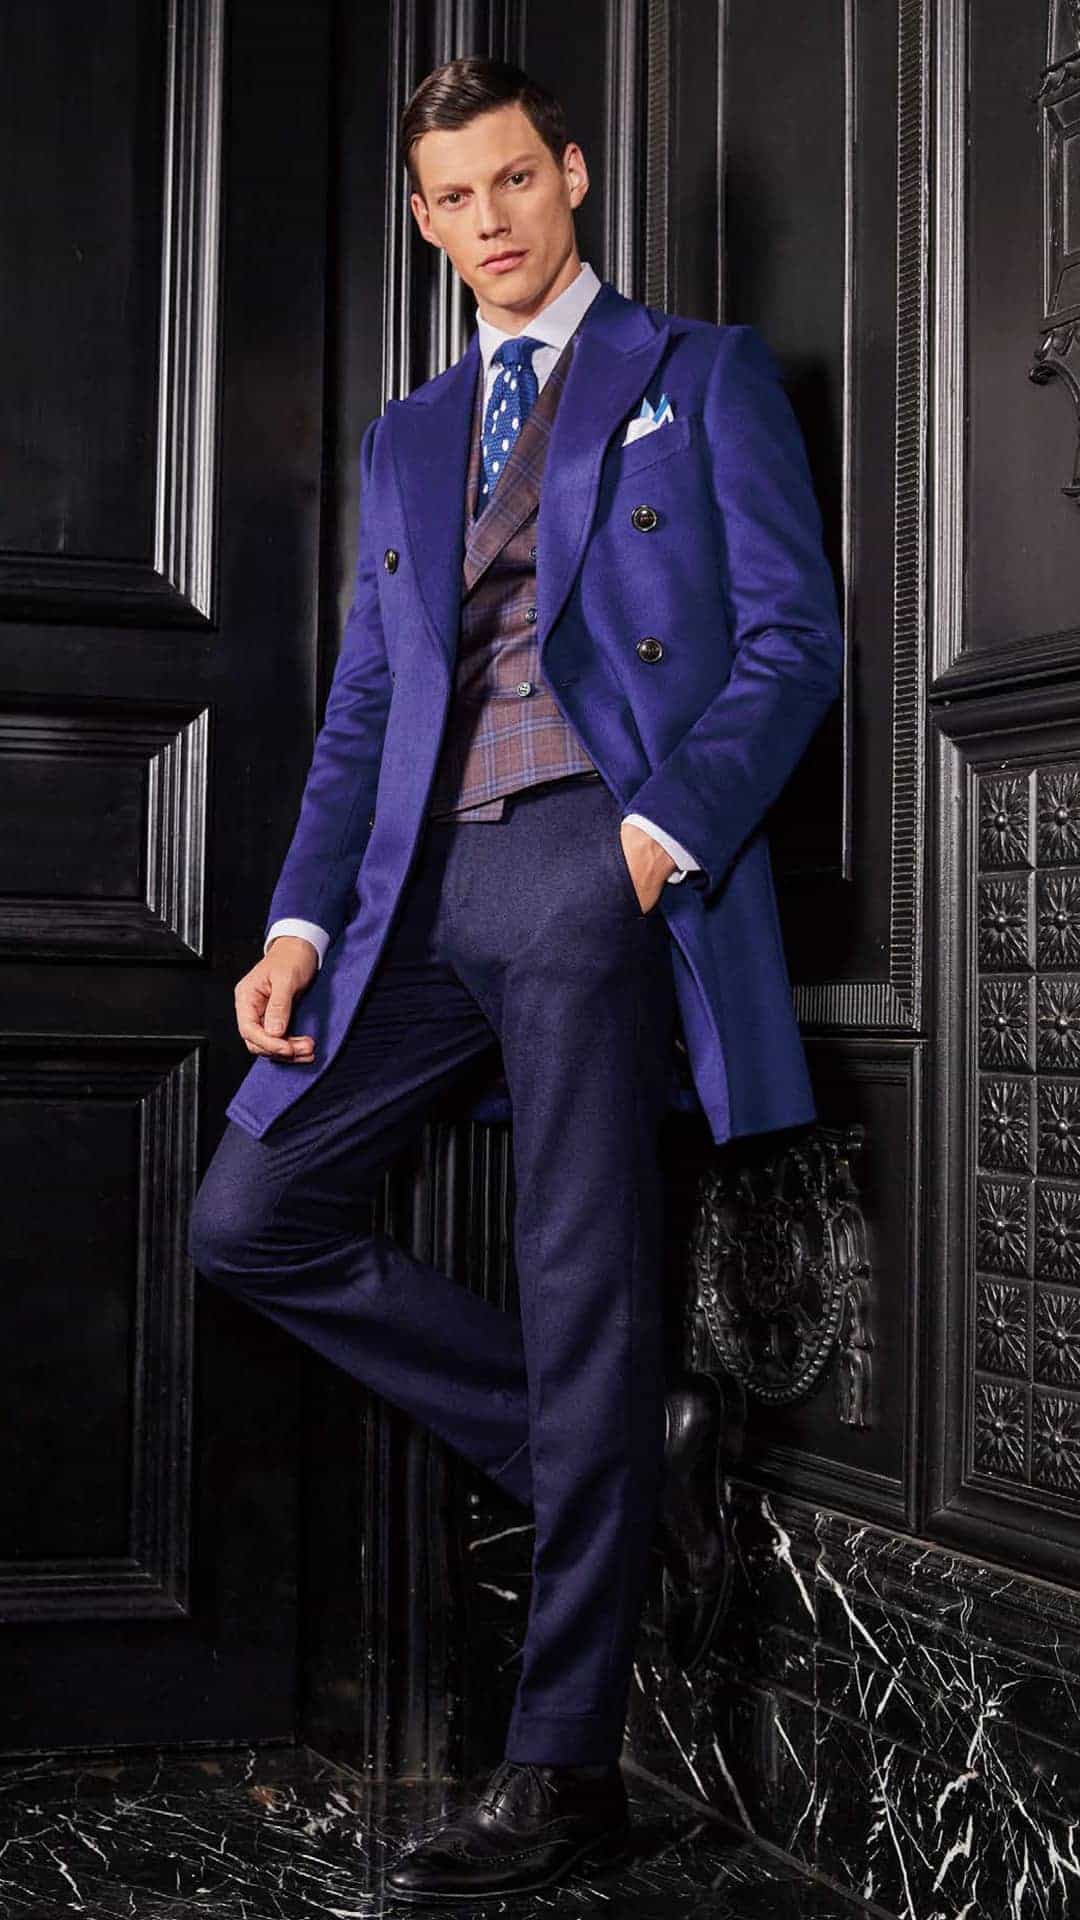 Tailor Made Overcoat | Bespoke Overcoat | Mens Overcoat | Sydney ...